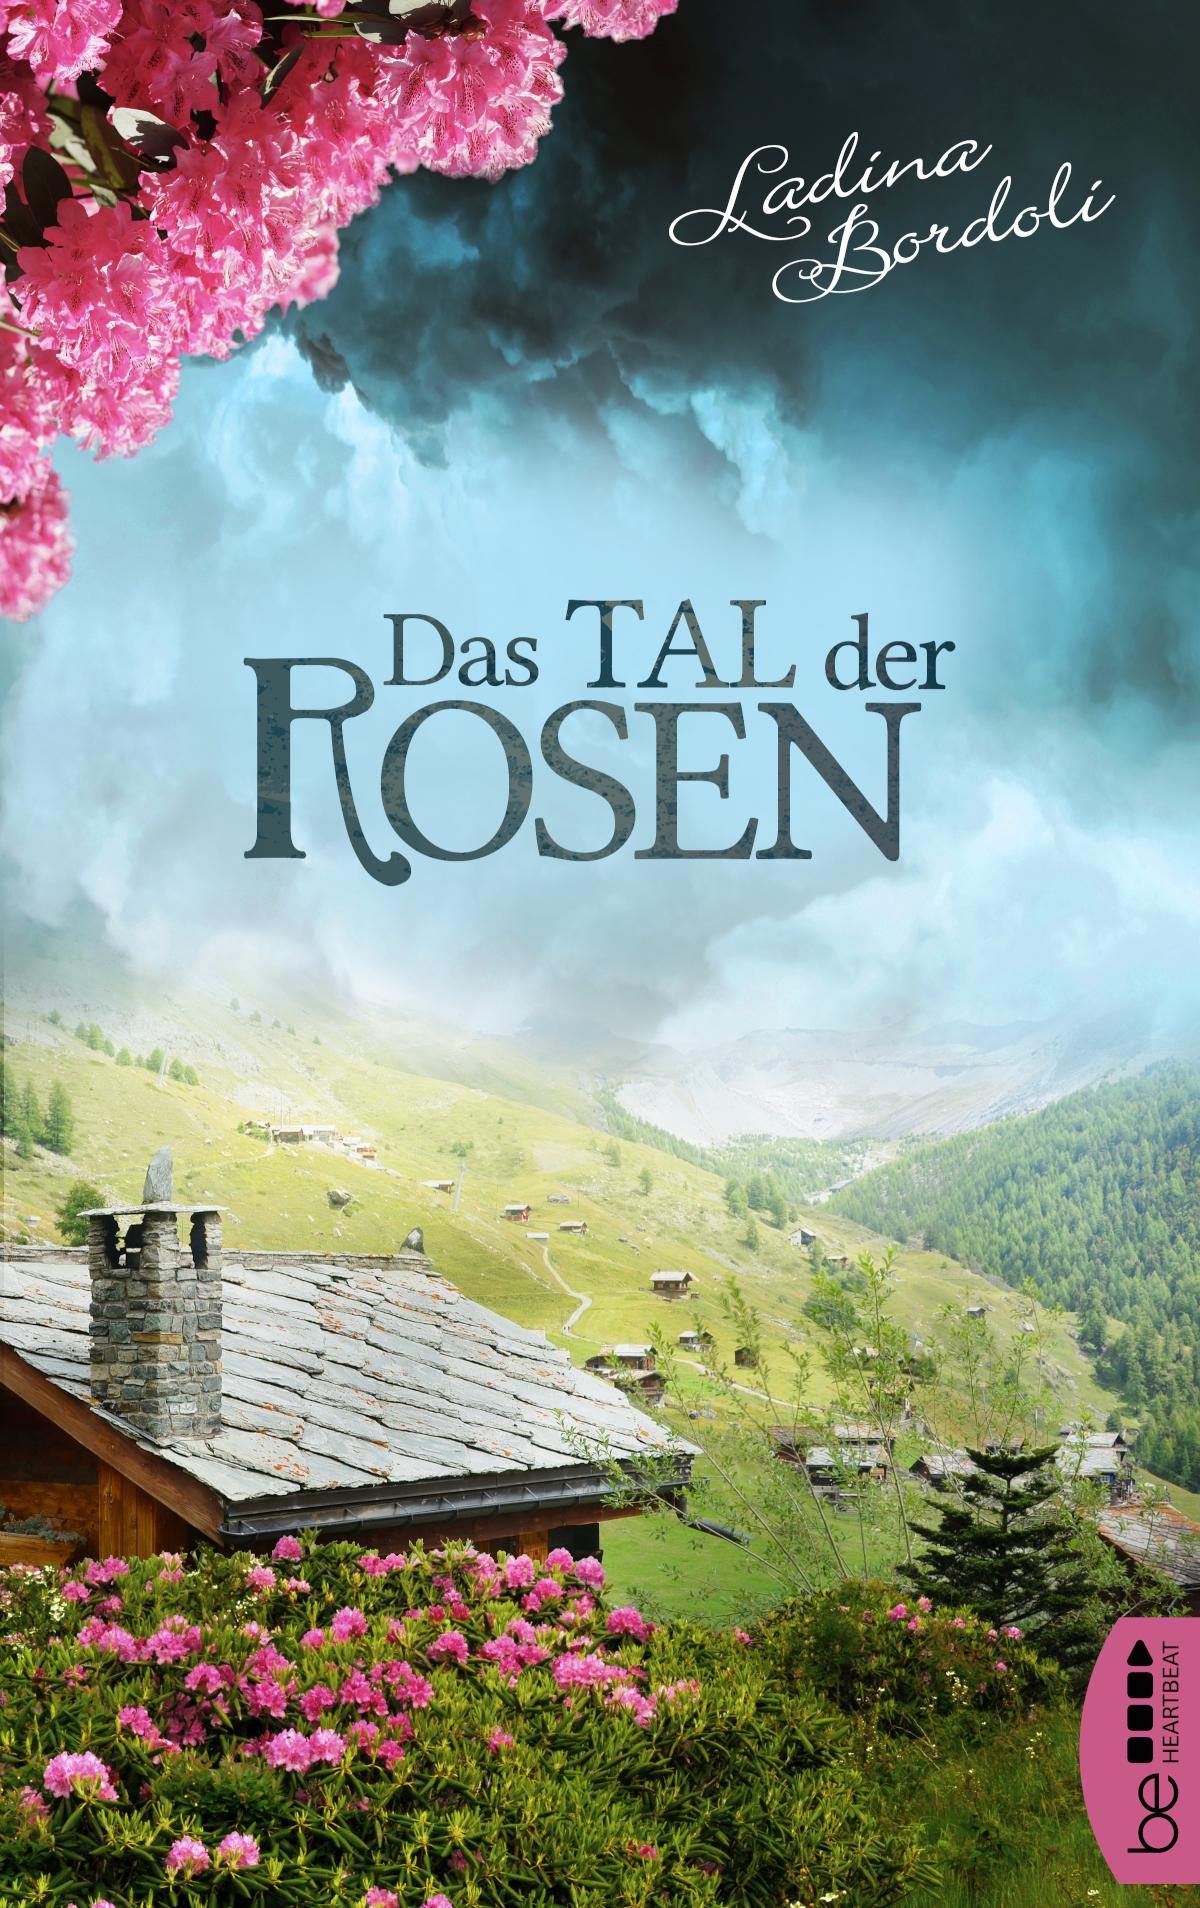 Das Tal der Rosen Eine gefühlvolle und anrührende Schweizer Familiengeschichte.